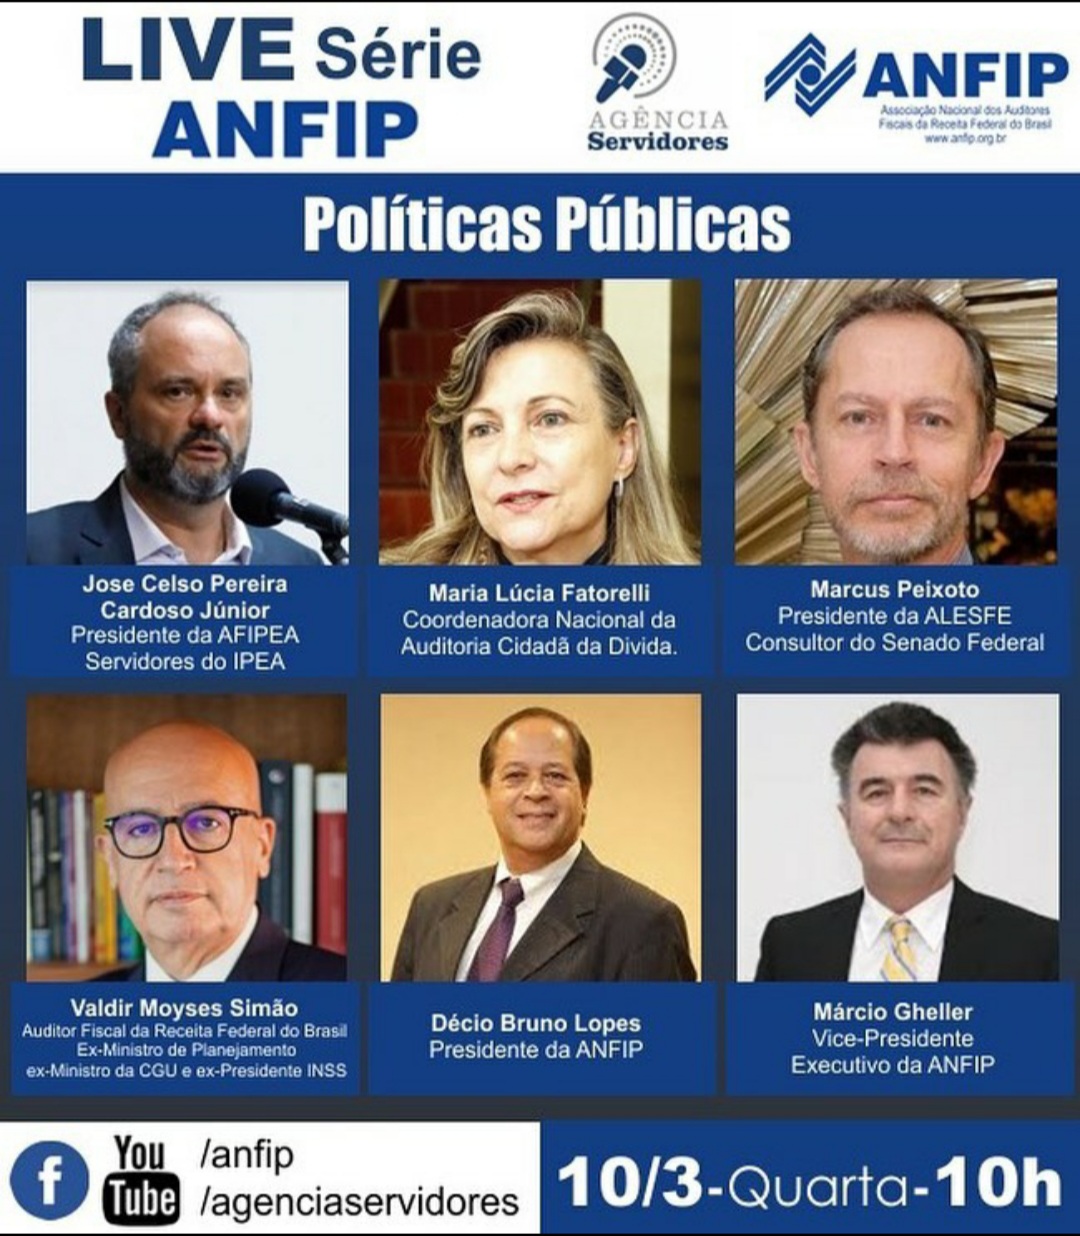 Live ANFIP – “Políticas Públicas”